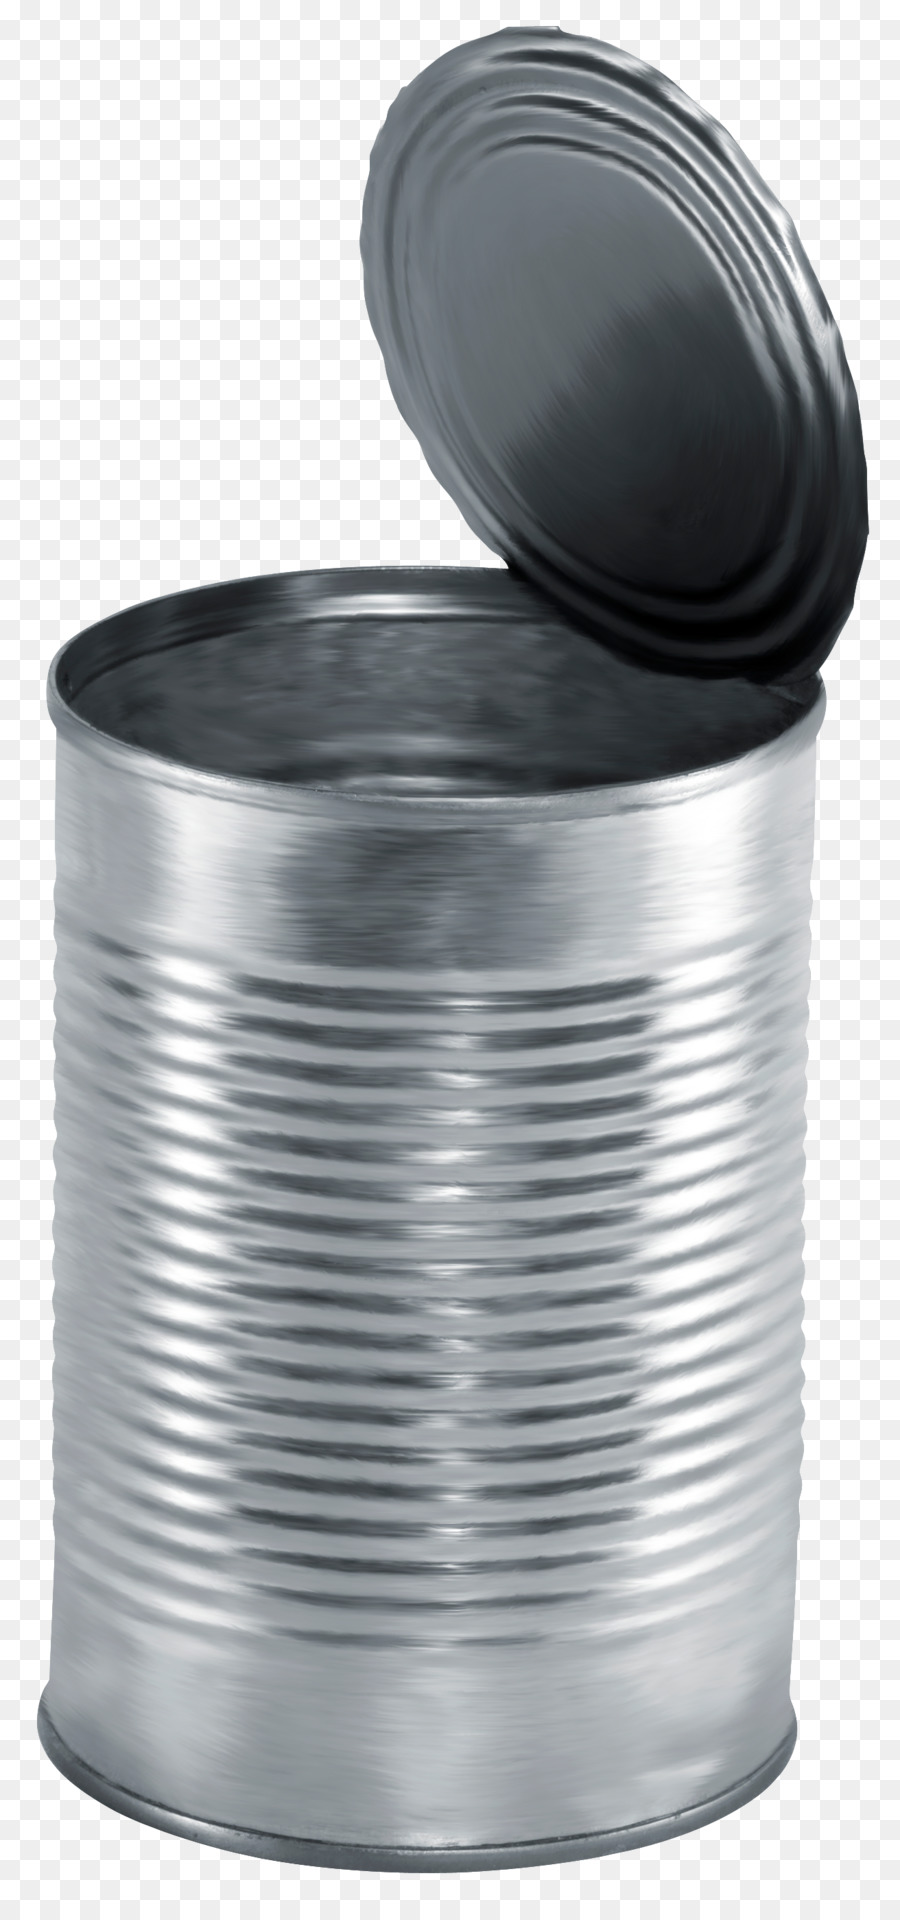 Tin can, Canning Getränke können Aluminium können - Silber Papierkorb